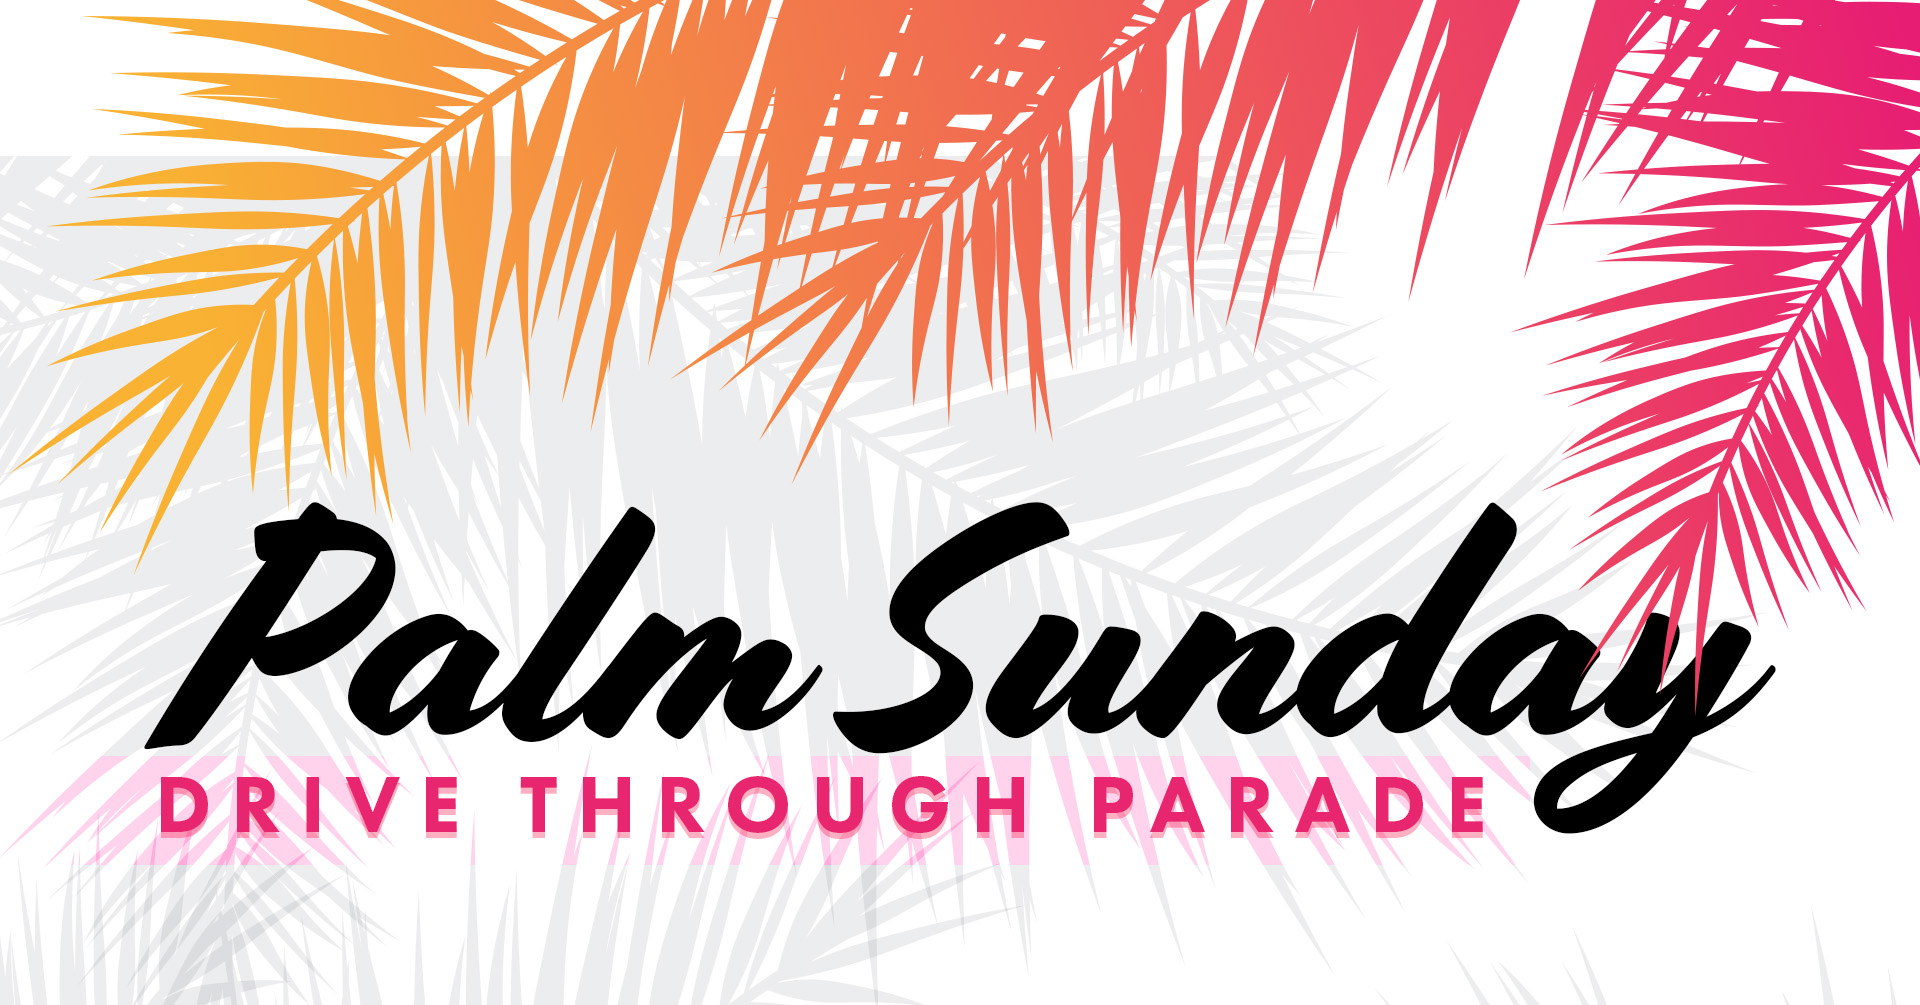 Drive-Through Palm Parade